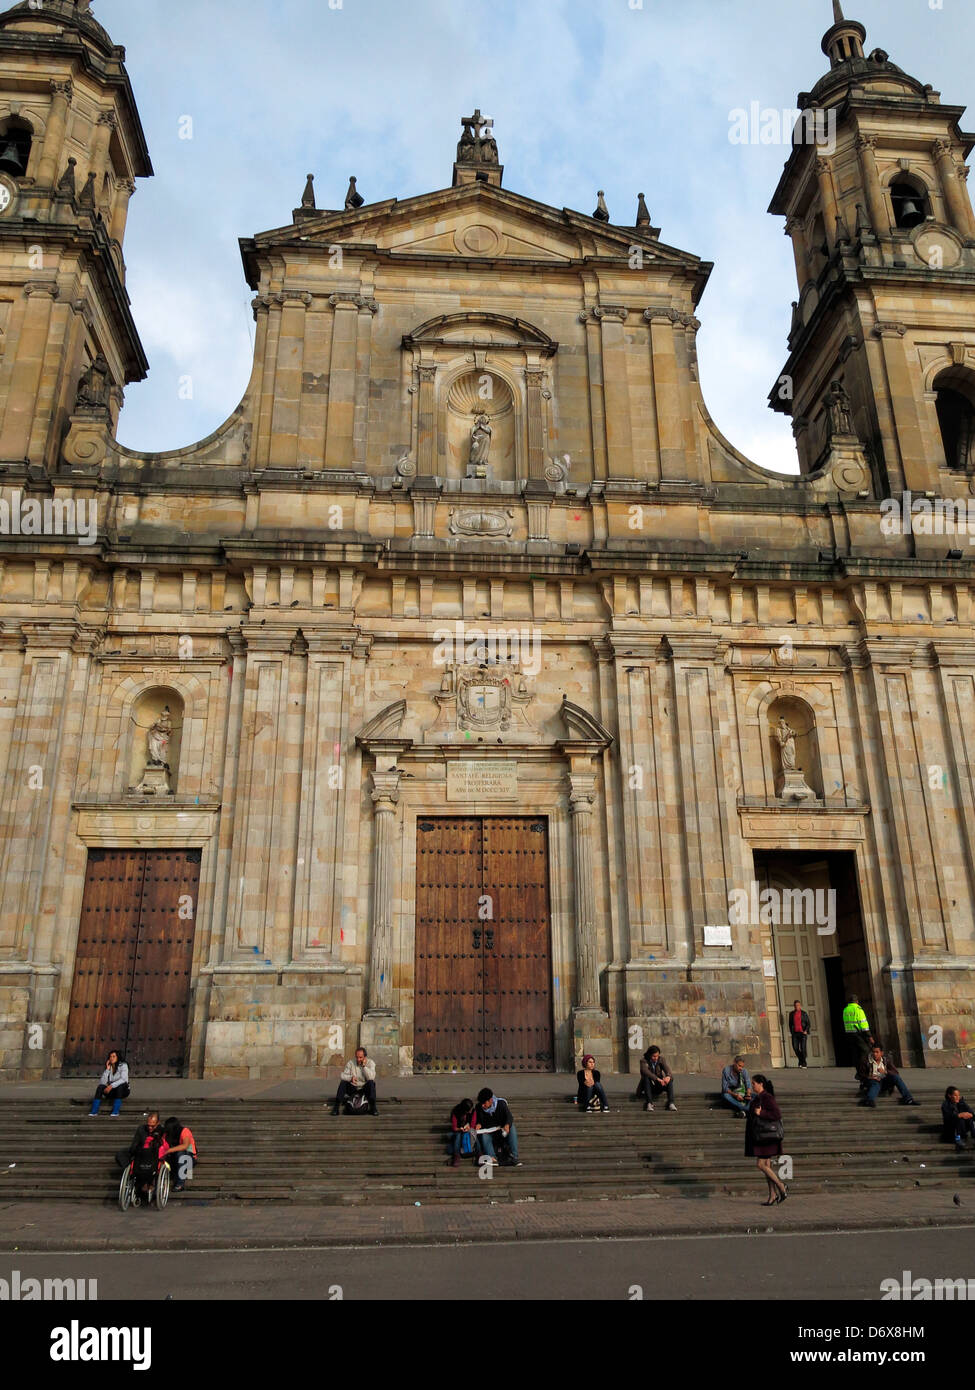 Menschen sitzen auf den Stufen des Catedral Primada in Plaza de Bolivar. Stockfoto